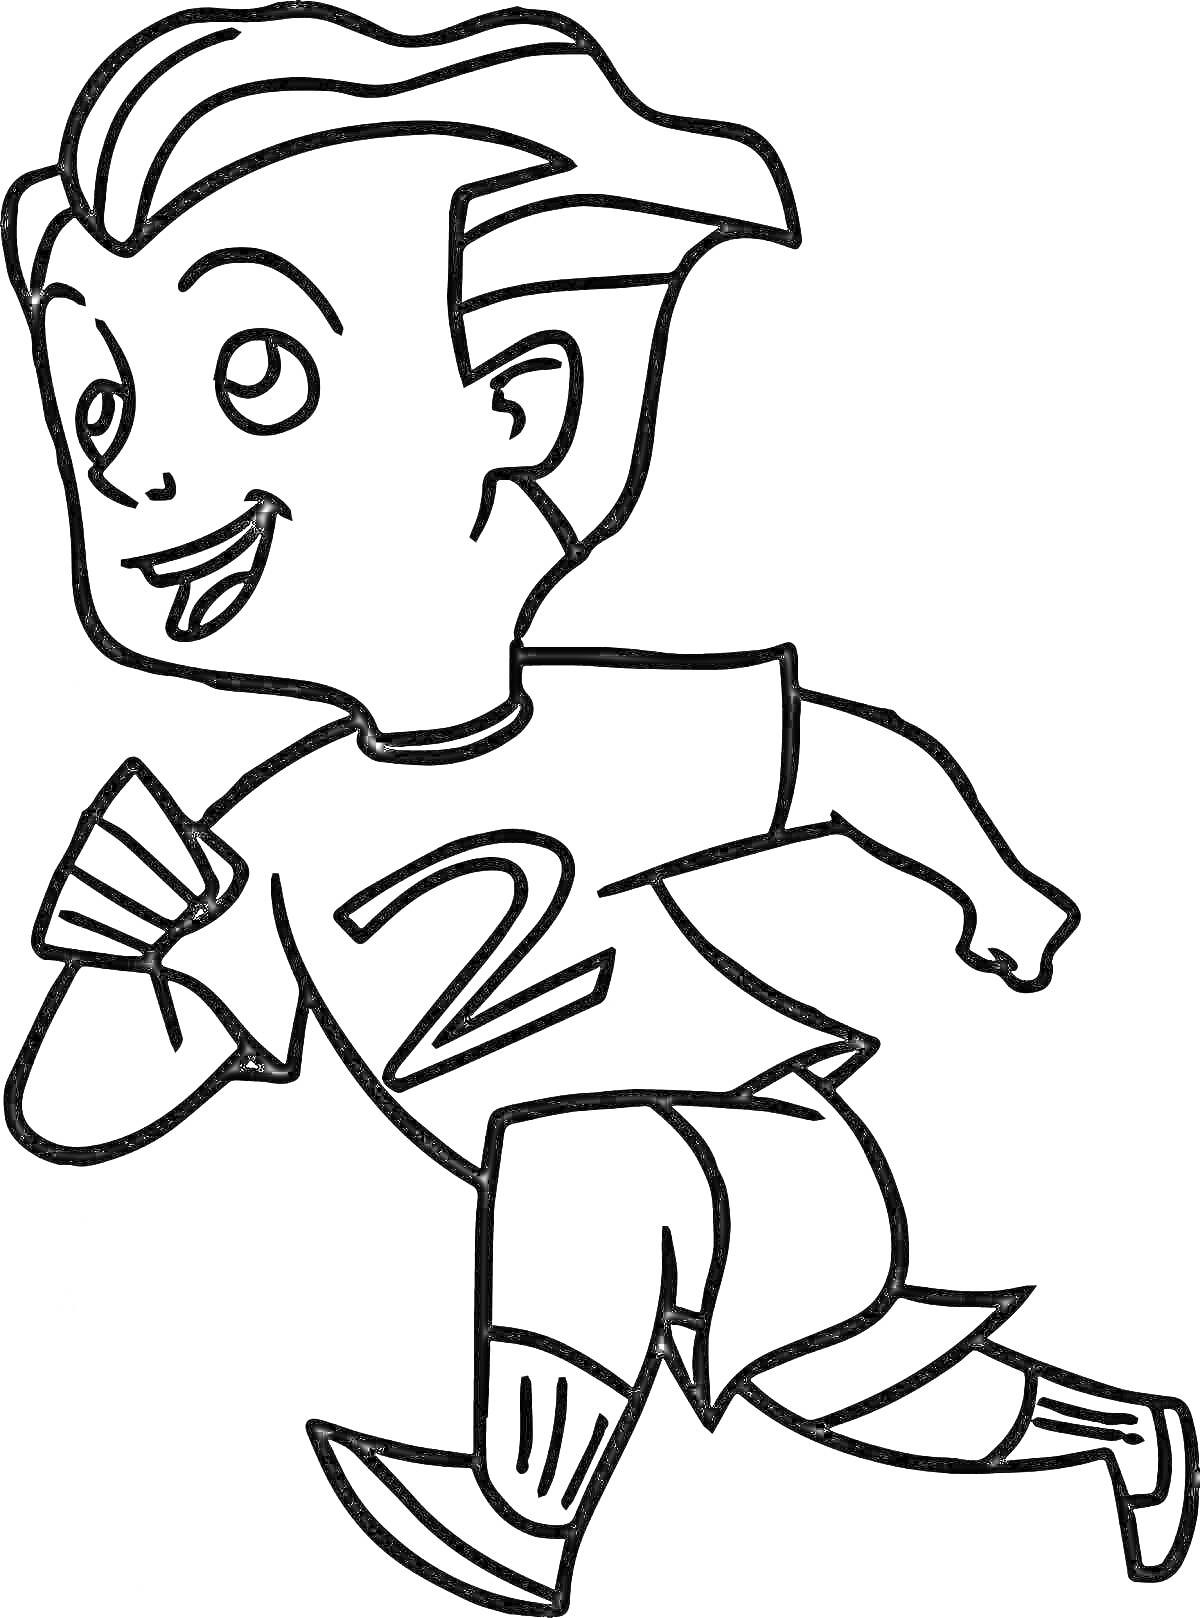 Раскраска Мальчик с прической, бегающий в футболке с номером 2, спортивных шортах и высоких носках